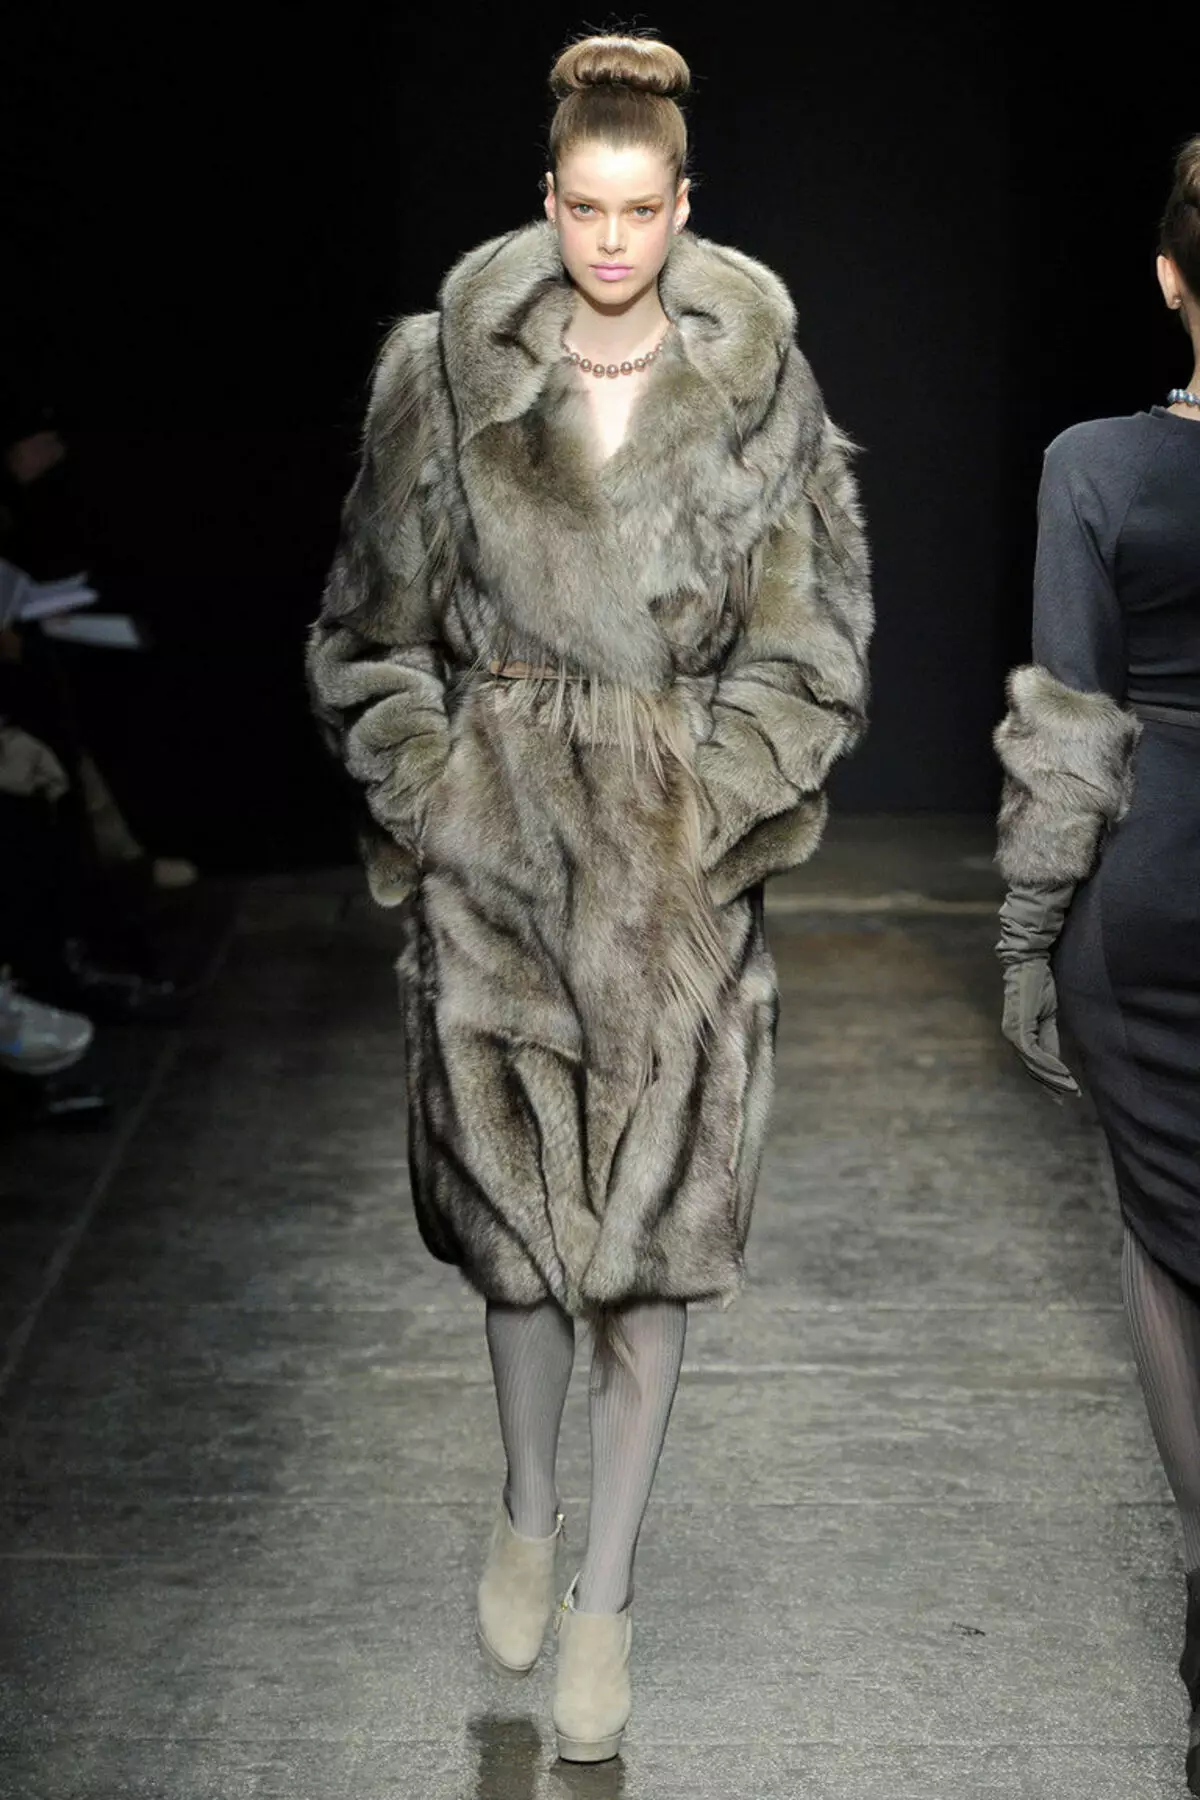 Wolf Fur Coat (60 foto's): Vroue se bontjas, van 'n steppe wolfbont, van rooi, swart, hoeveel koste, resensies 728_54